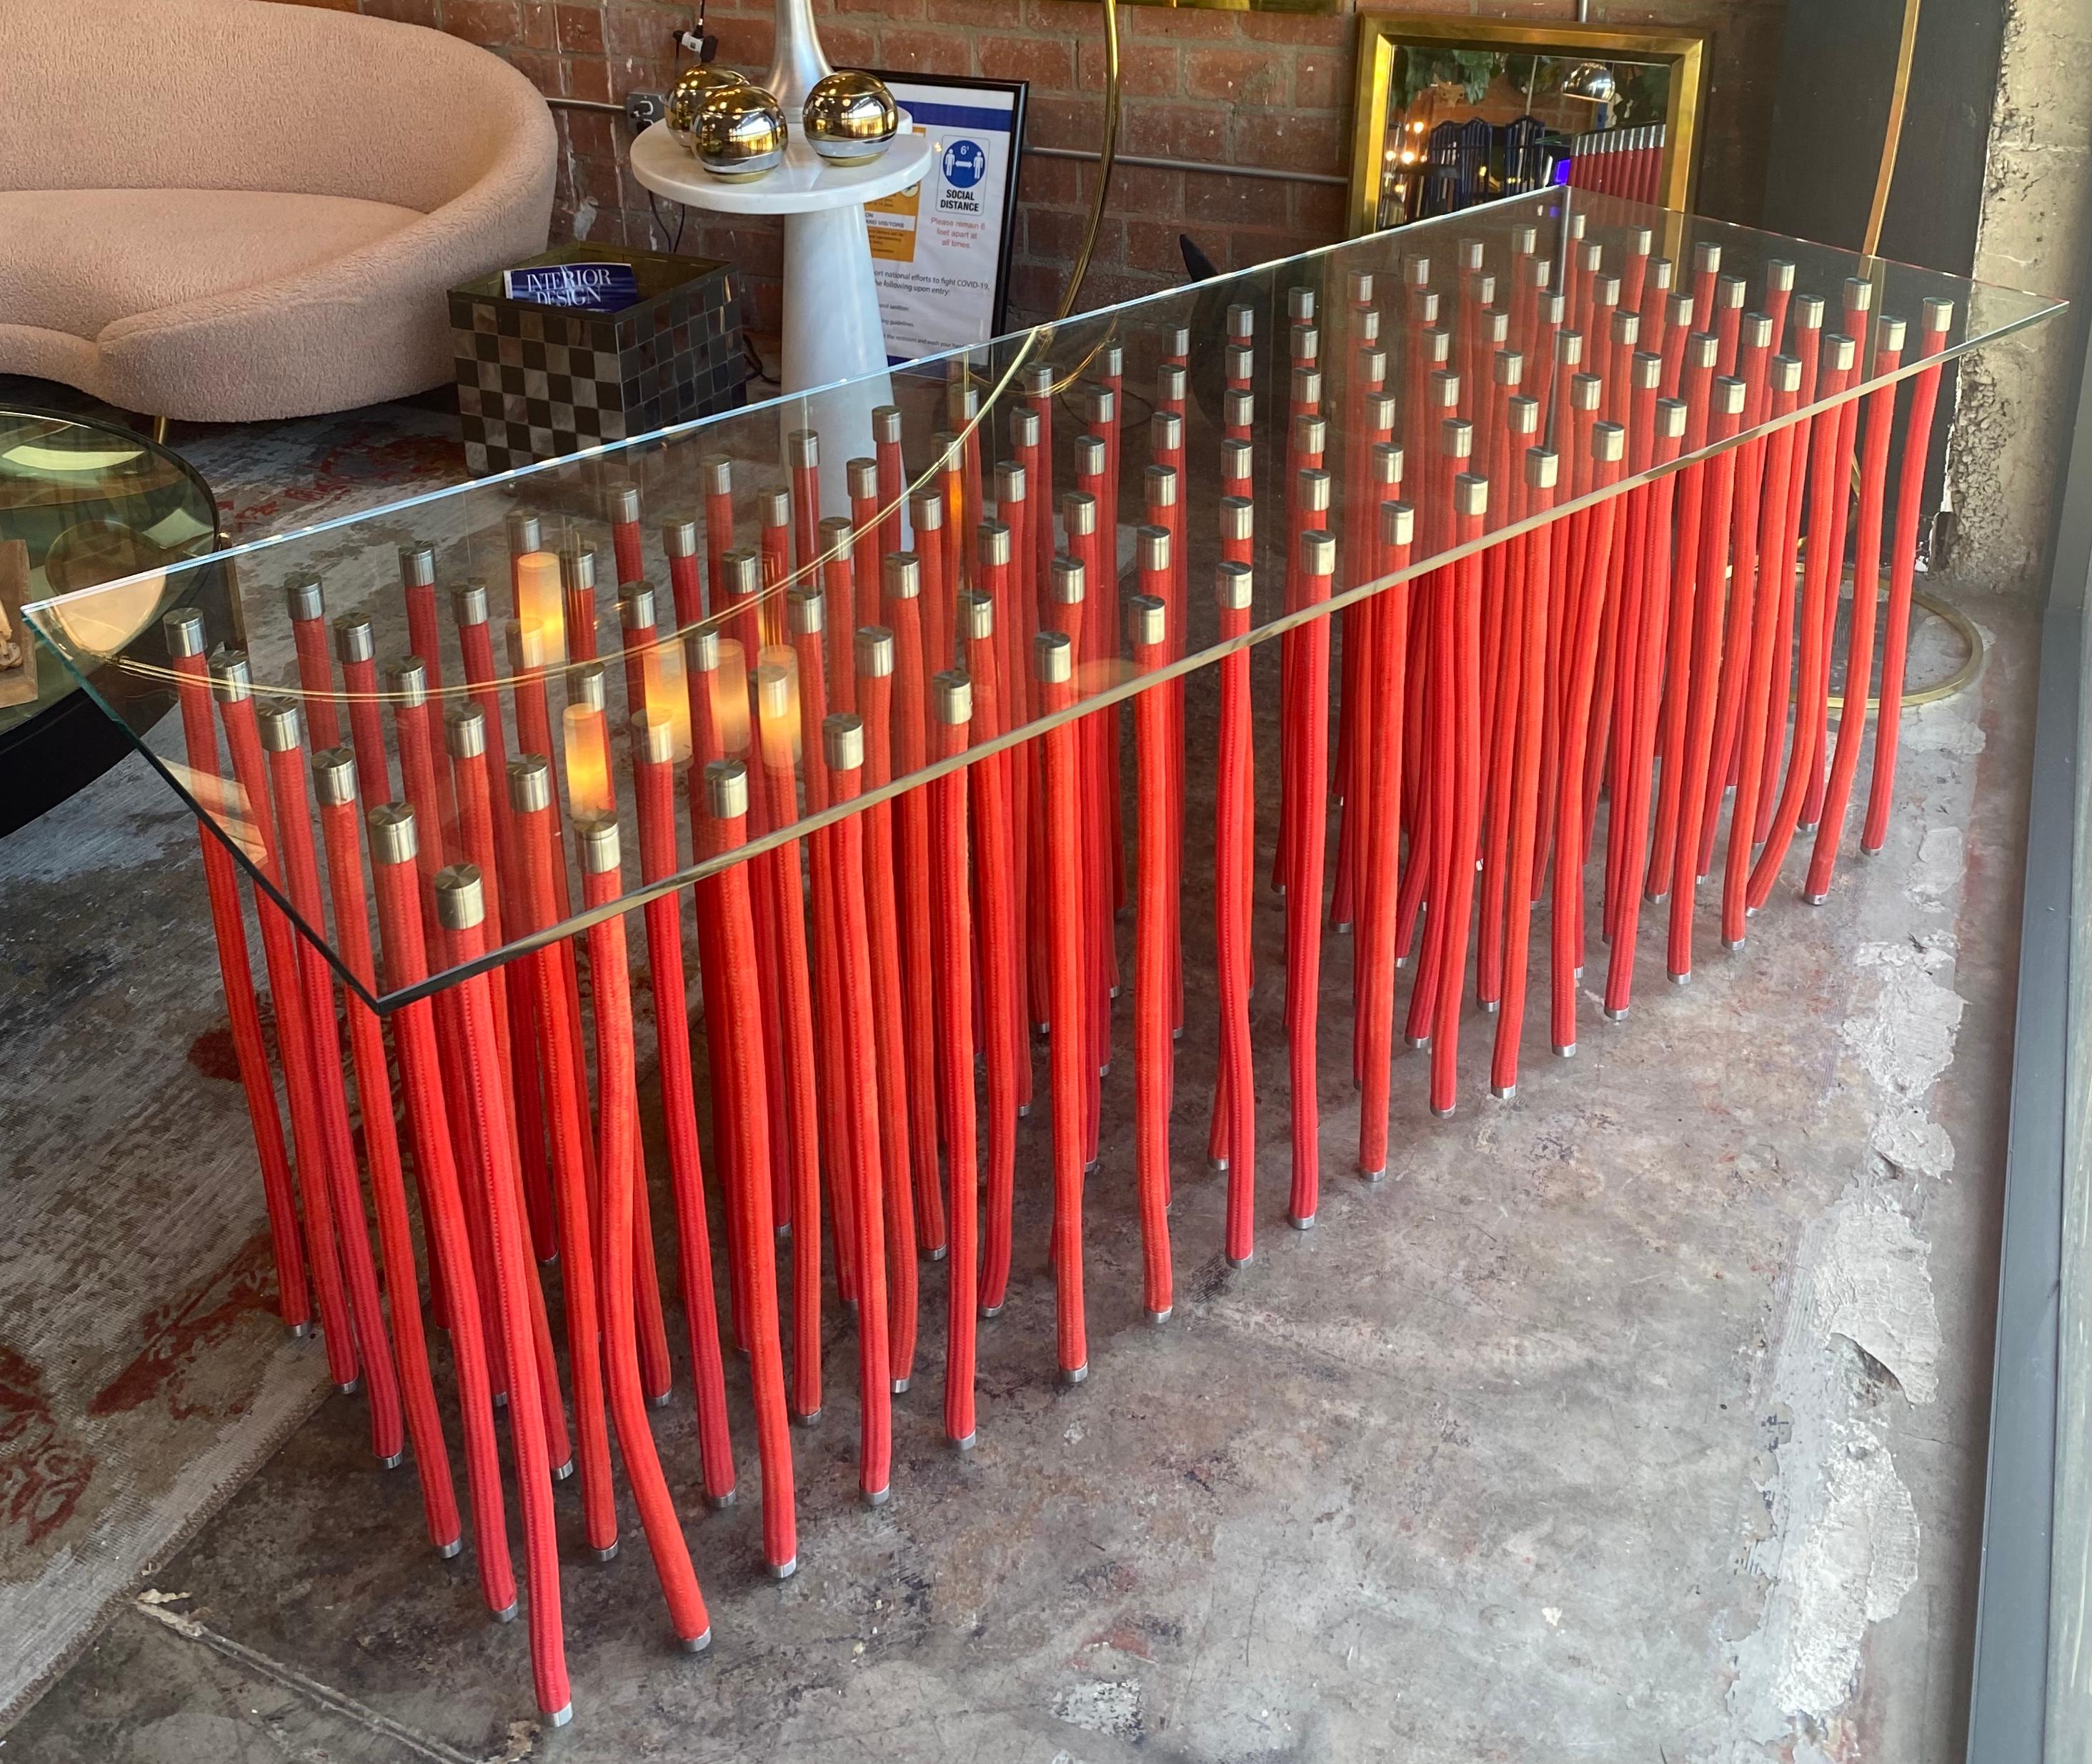 Une grande table rouge ORG conçue par Fabio Novembre (italien, né en 1967) en 2001 pour Cappellini. Le plateau en verre est soutenu par un acier recouvert d'une corde en polypropylène avec un raccord apparent en acier inoxydable. La table semble